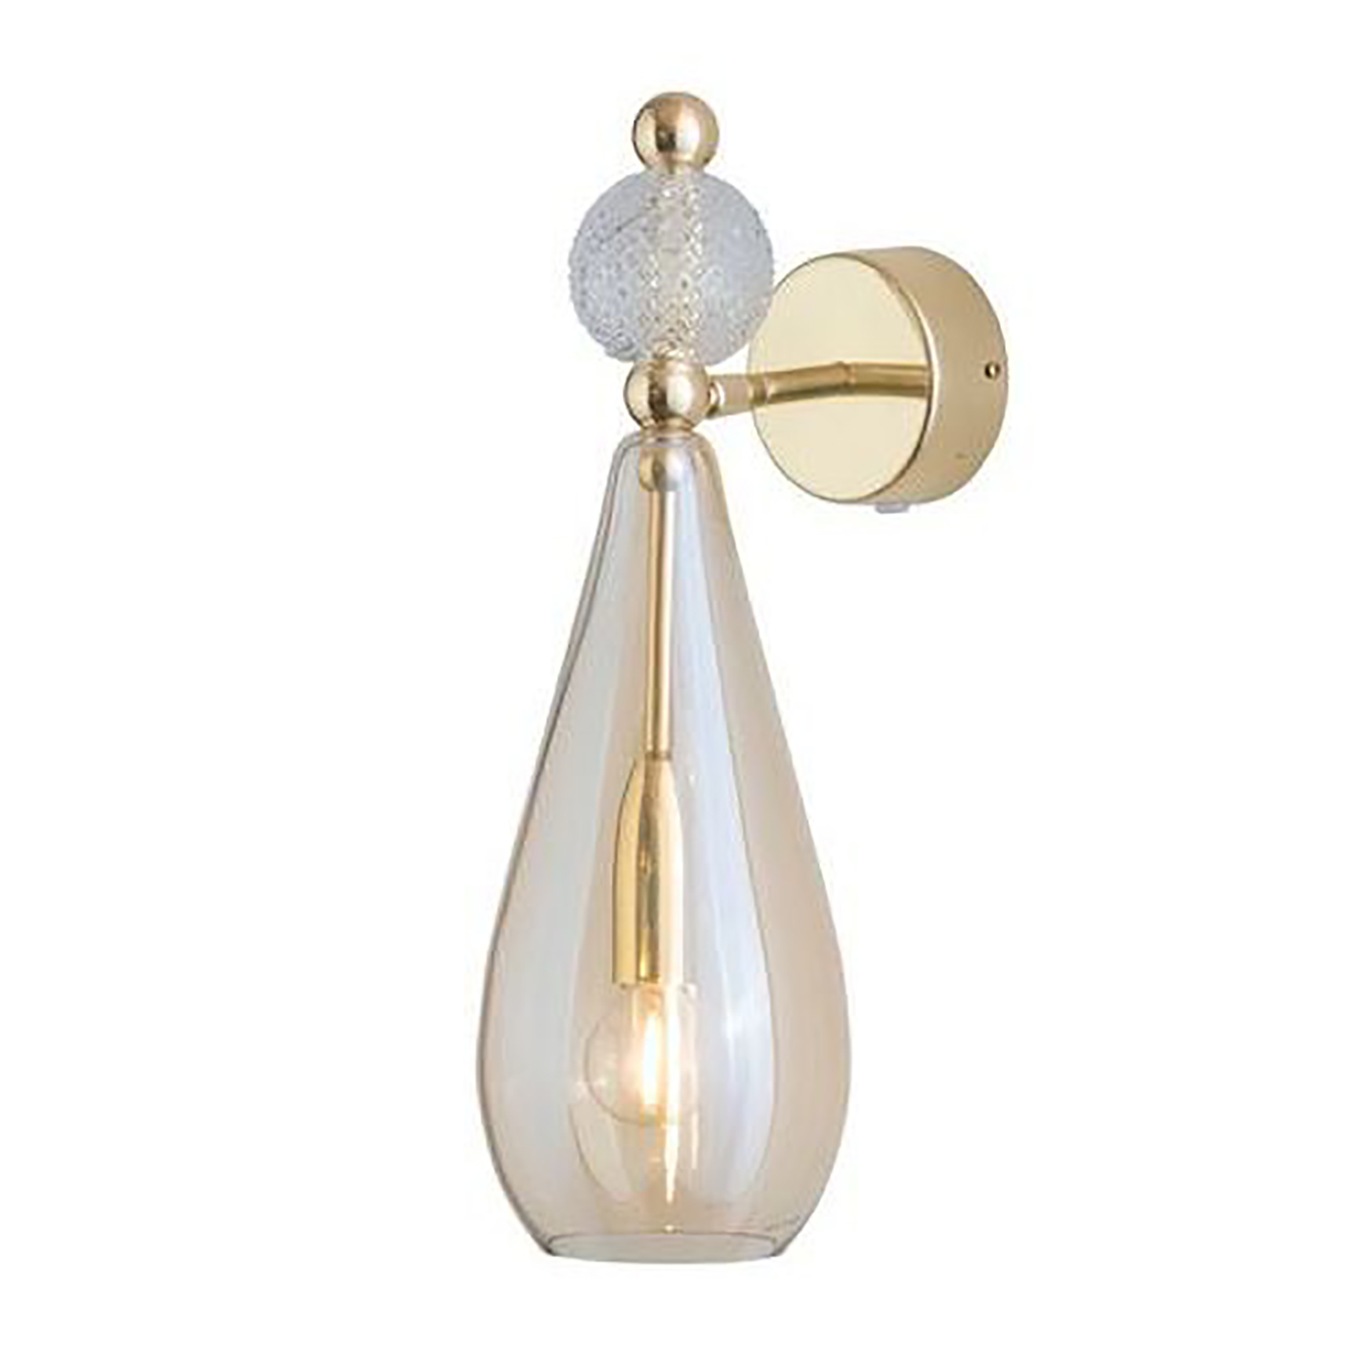 Smykke Wall Lamp, Golden Smoke / Crystal Check Ball / Shiny Gold